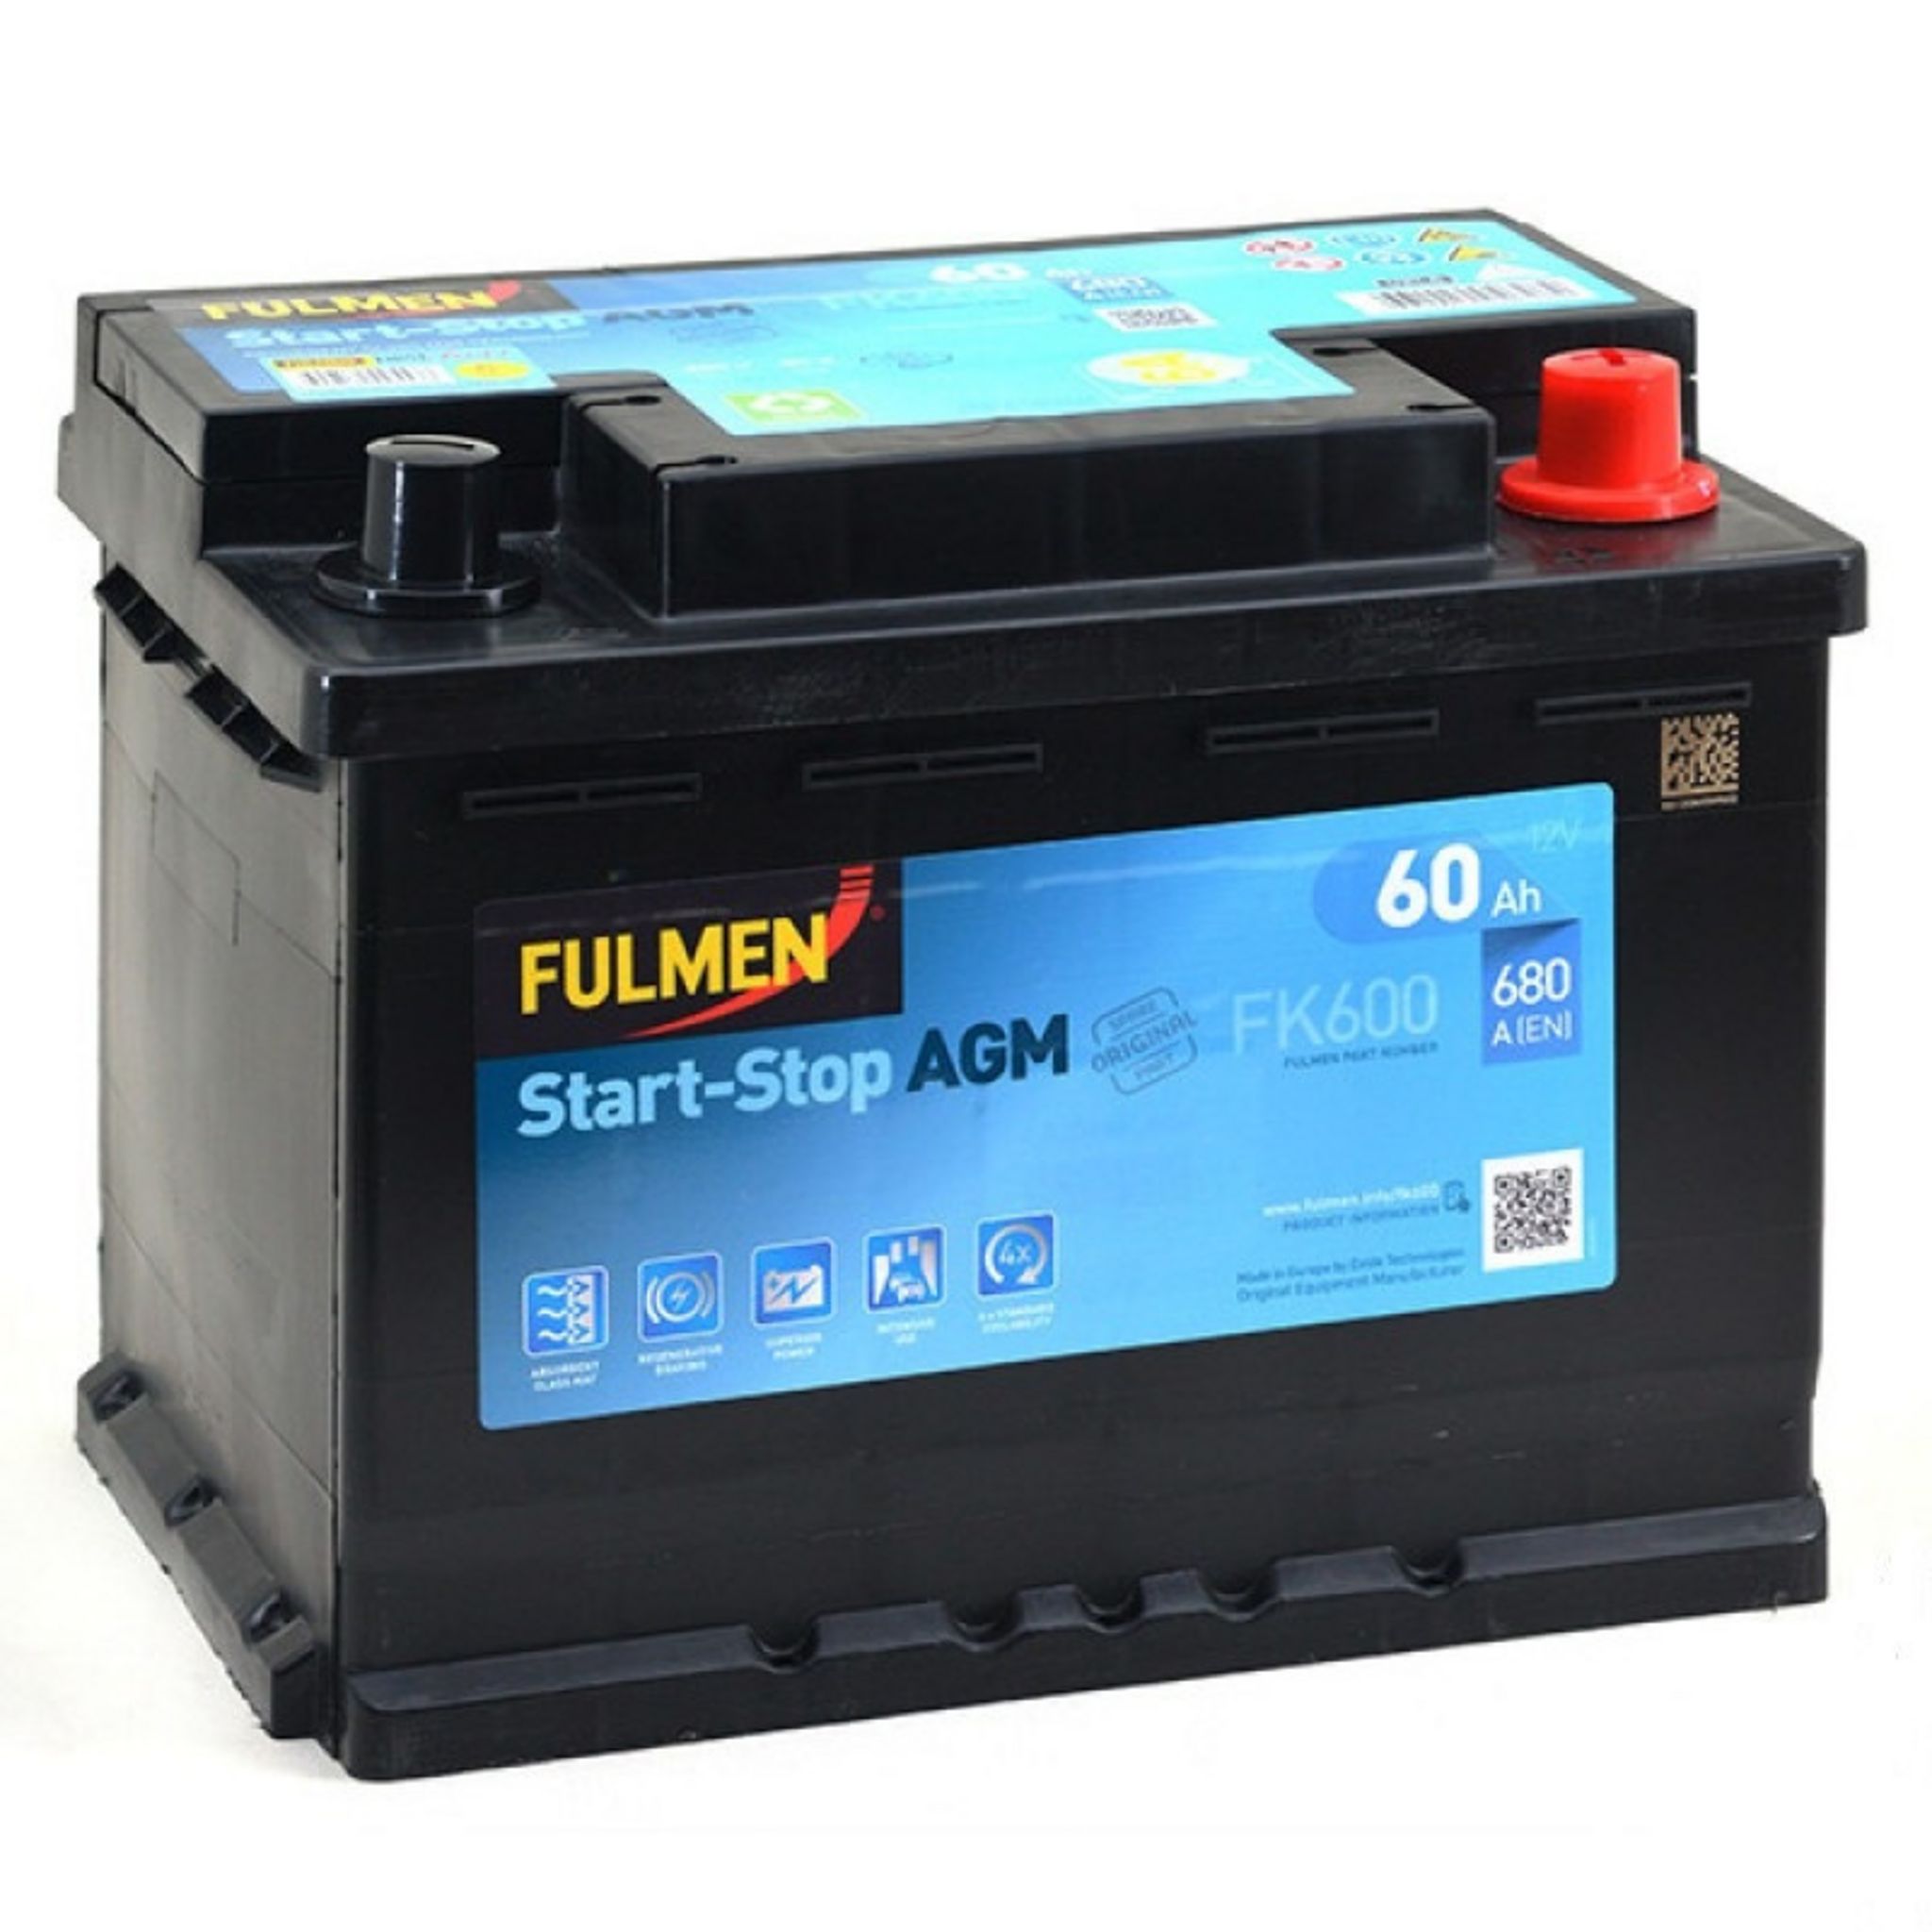 Fulmen - Batterie voiture FULMEN Formula FB356 12V 35Ah 240A